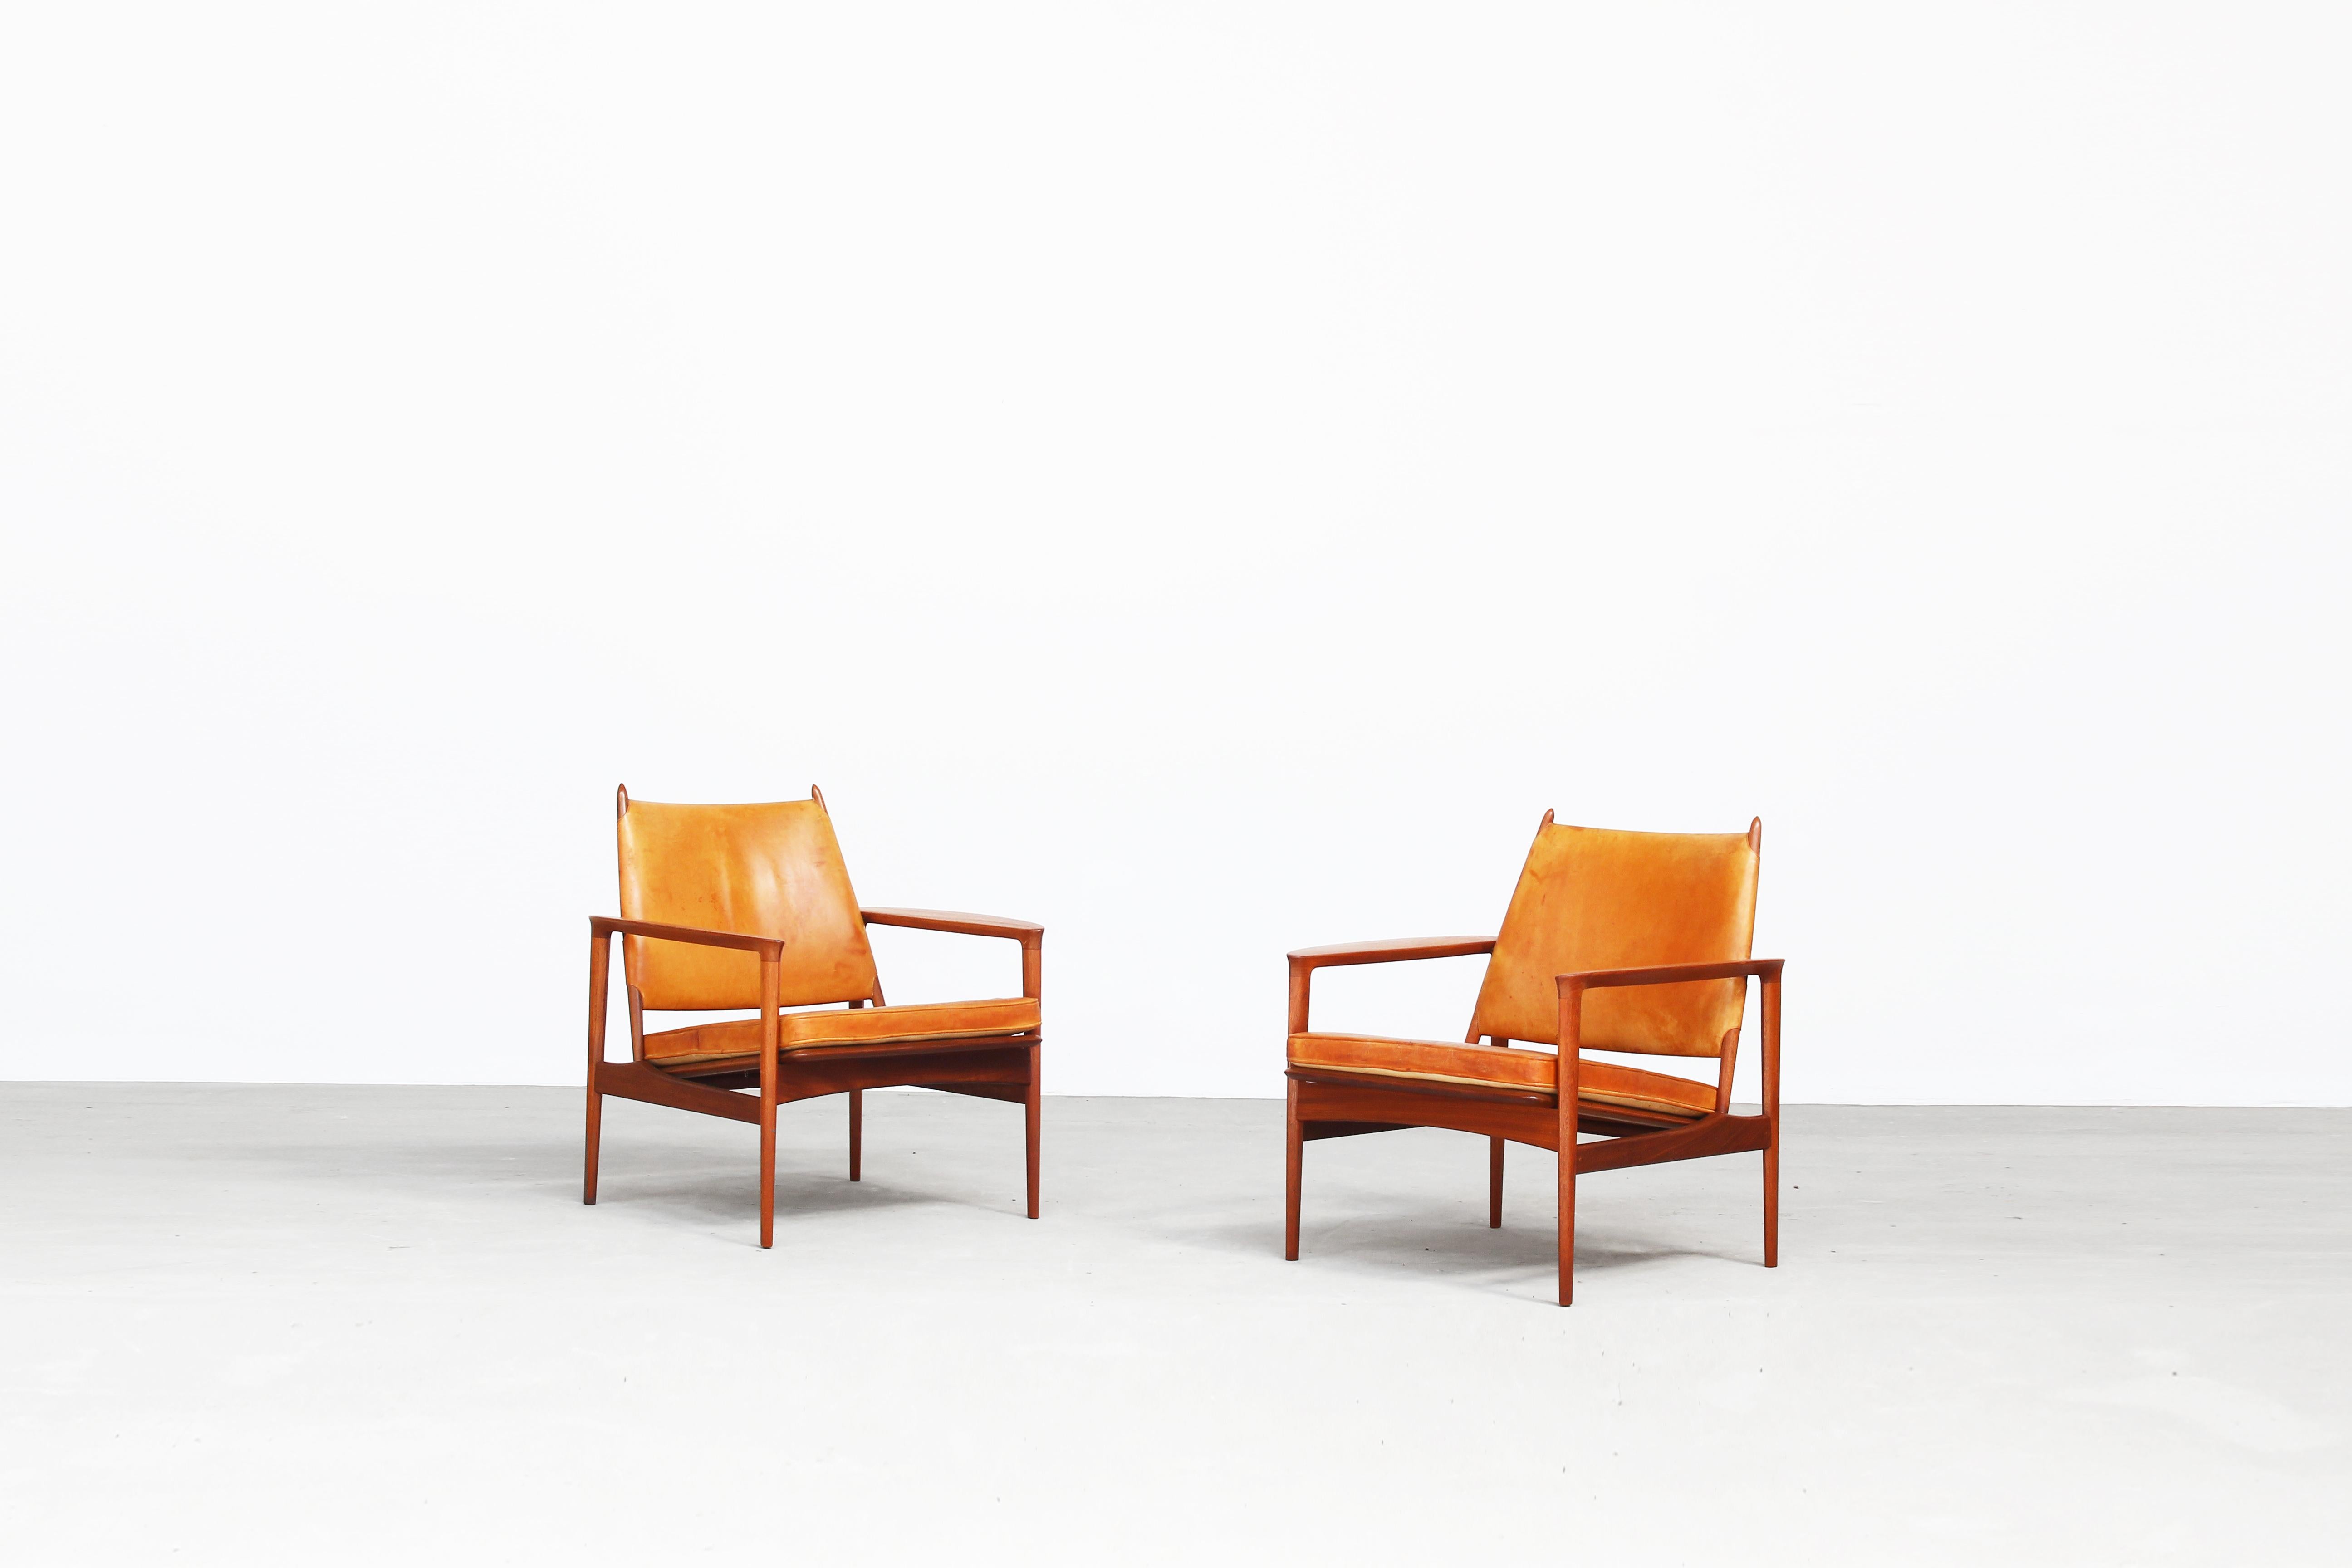 Sehr seltenes und schönes Paar Loungesessel, entworfen von Torbjørn Afdal und hergestellt von Svein Bjørneng in Norwegen, 1958.
Diese Stühle befinden sich im Originalzustand und sind mit einem perfekt patinierten Leder ausgestattet. Auch die